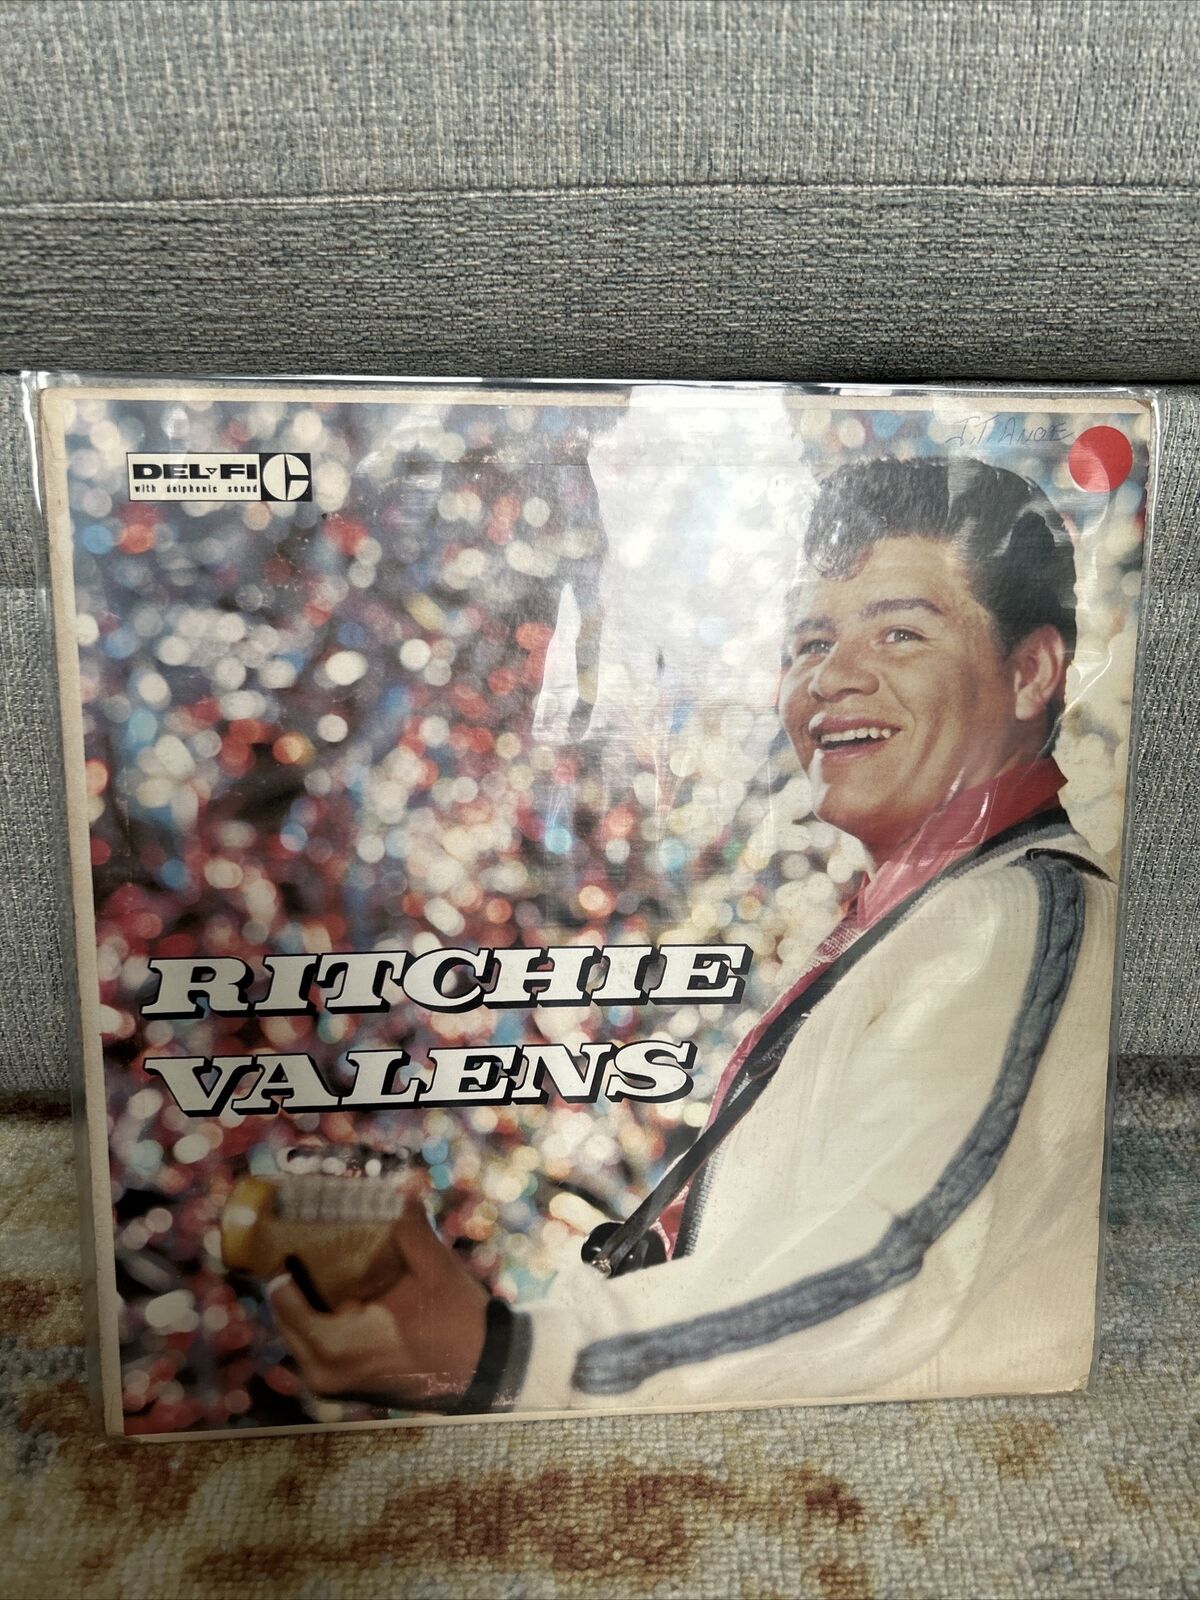 RITCHIE VALENS Self Titled 1959 Del Fi Records DFLP-1201 Original 1st Press VG++